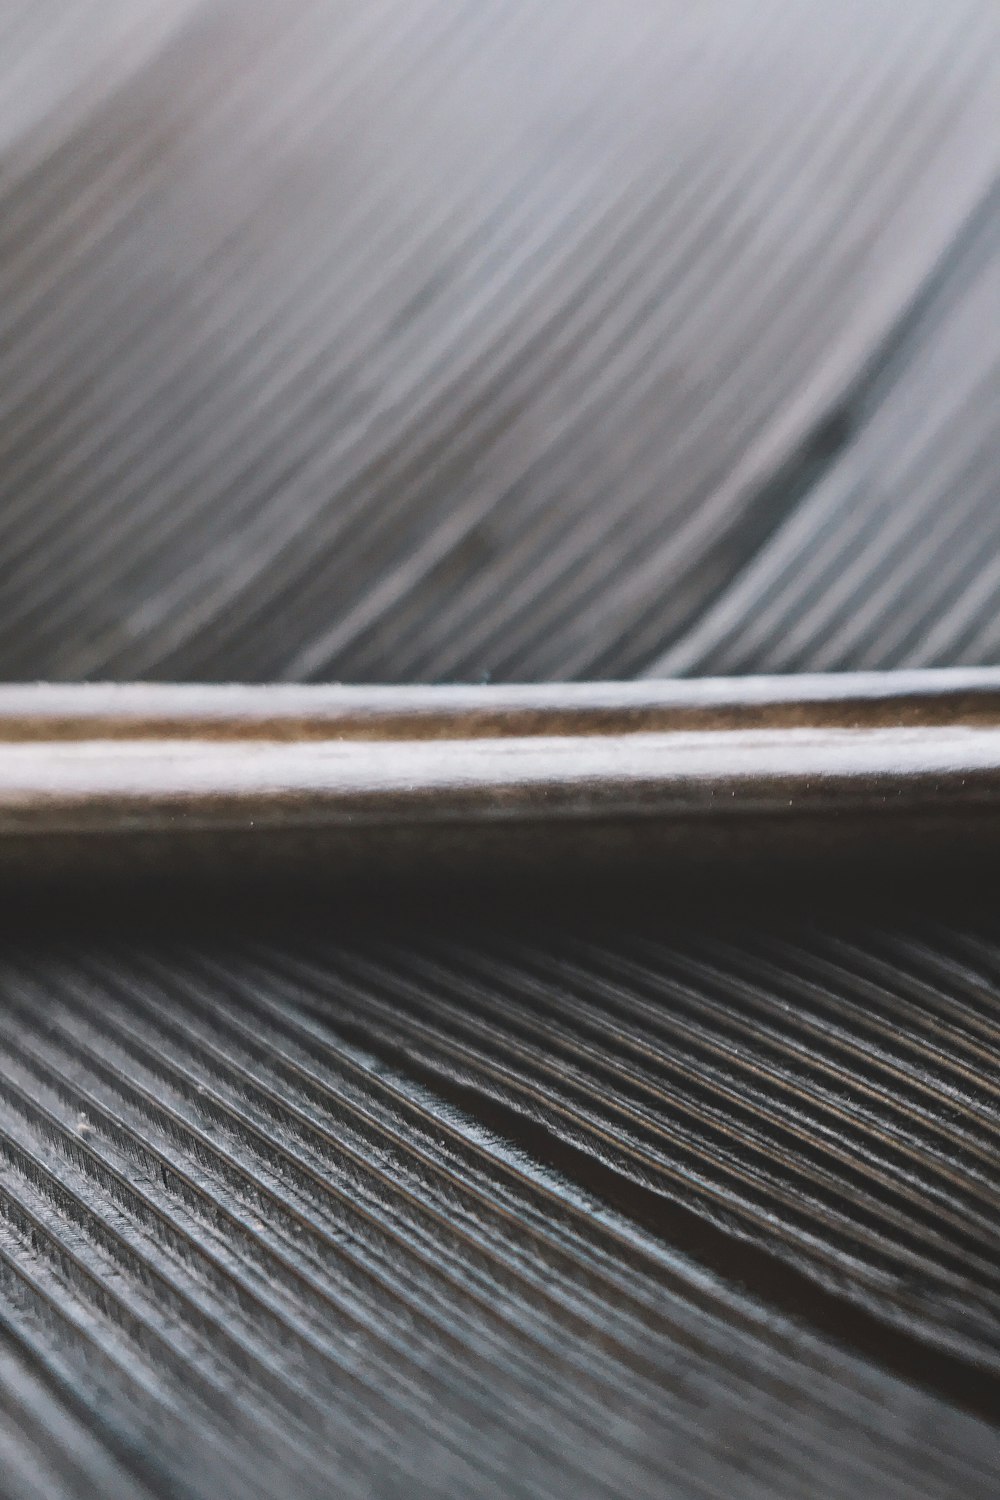 vara de madeira marrom na mesa de madeira marrom